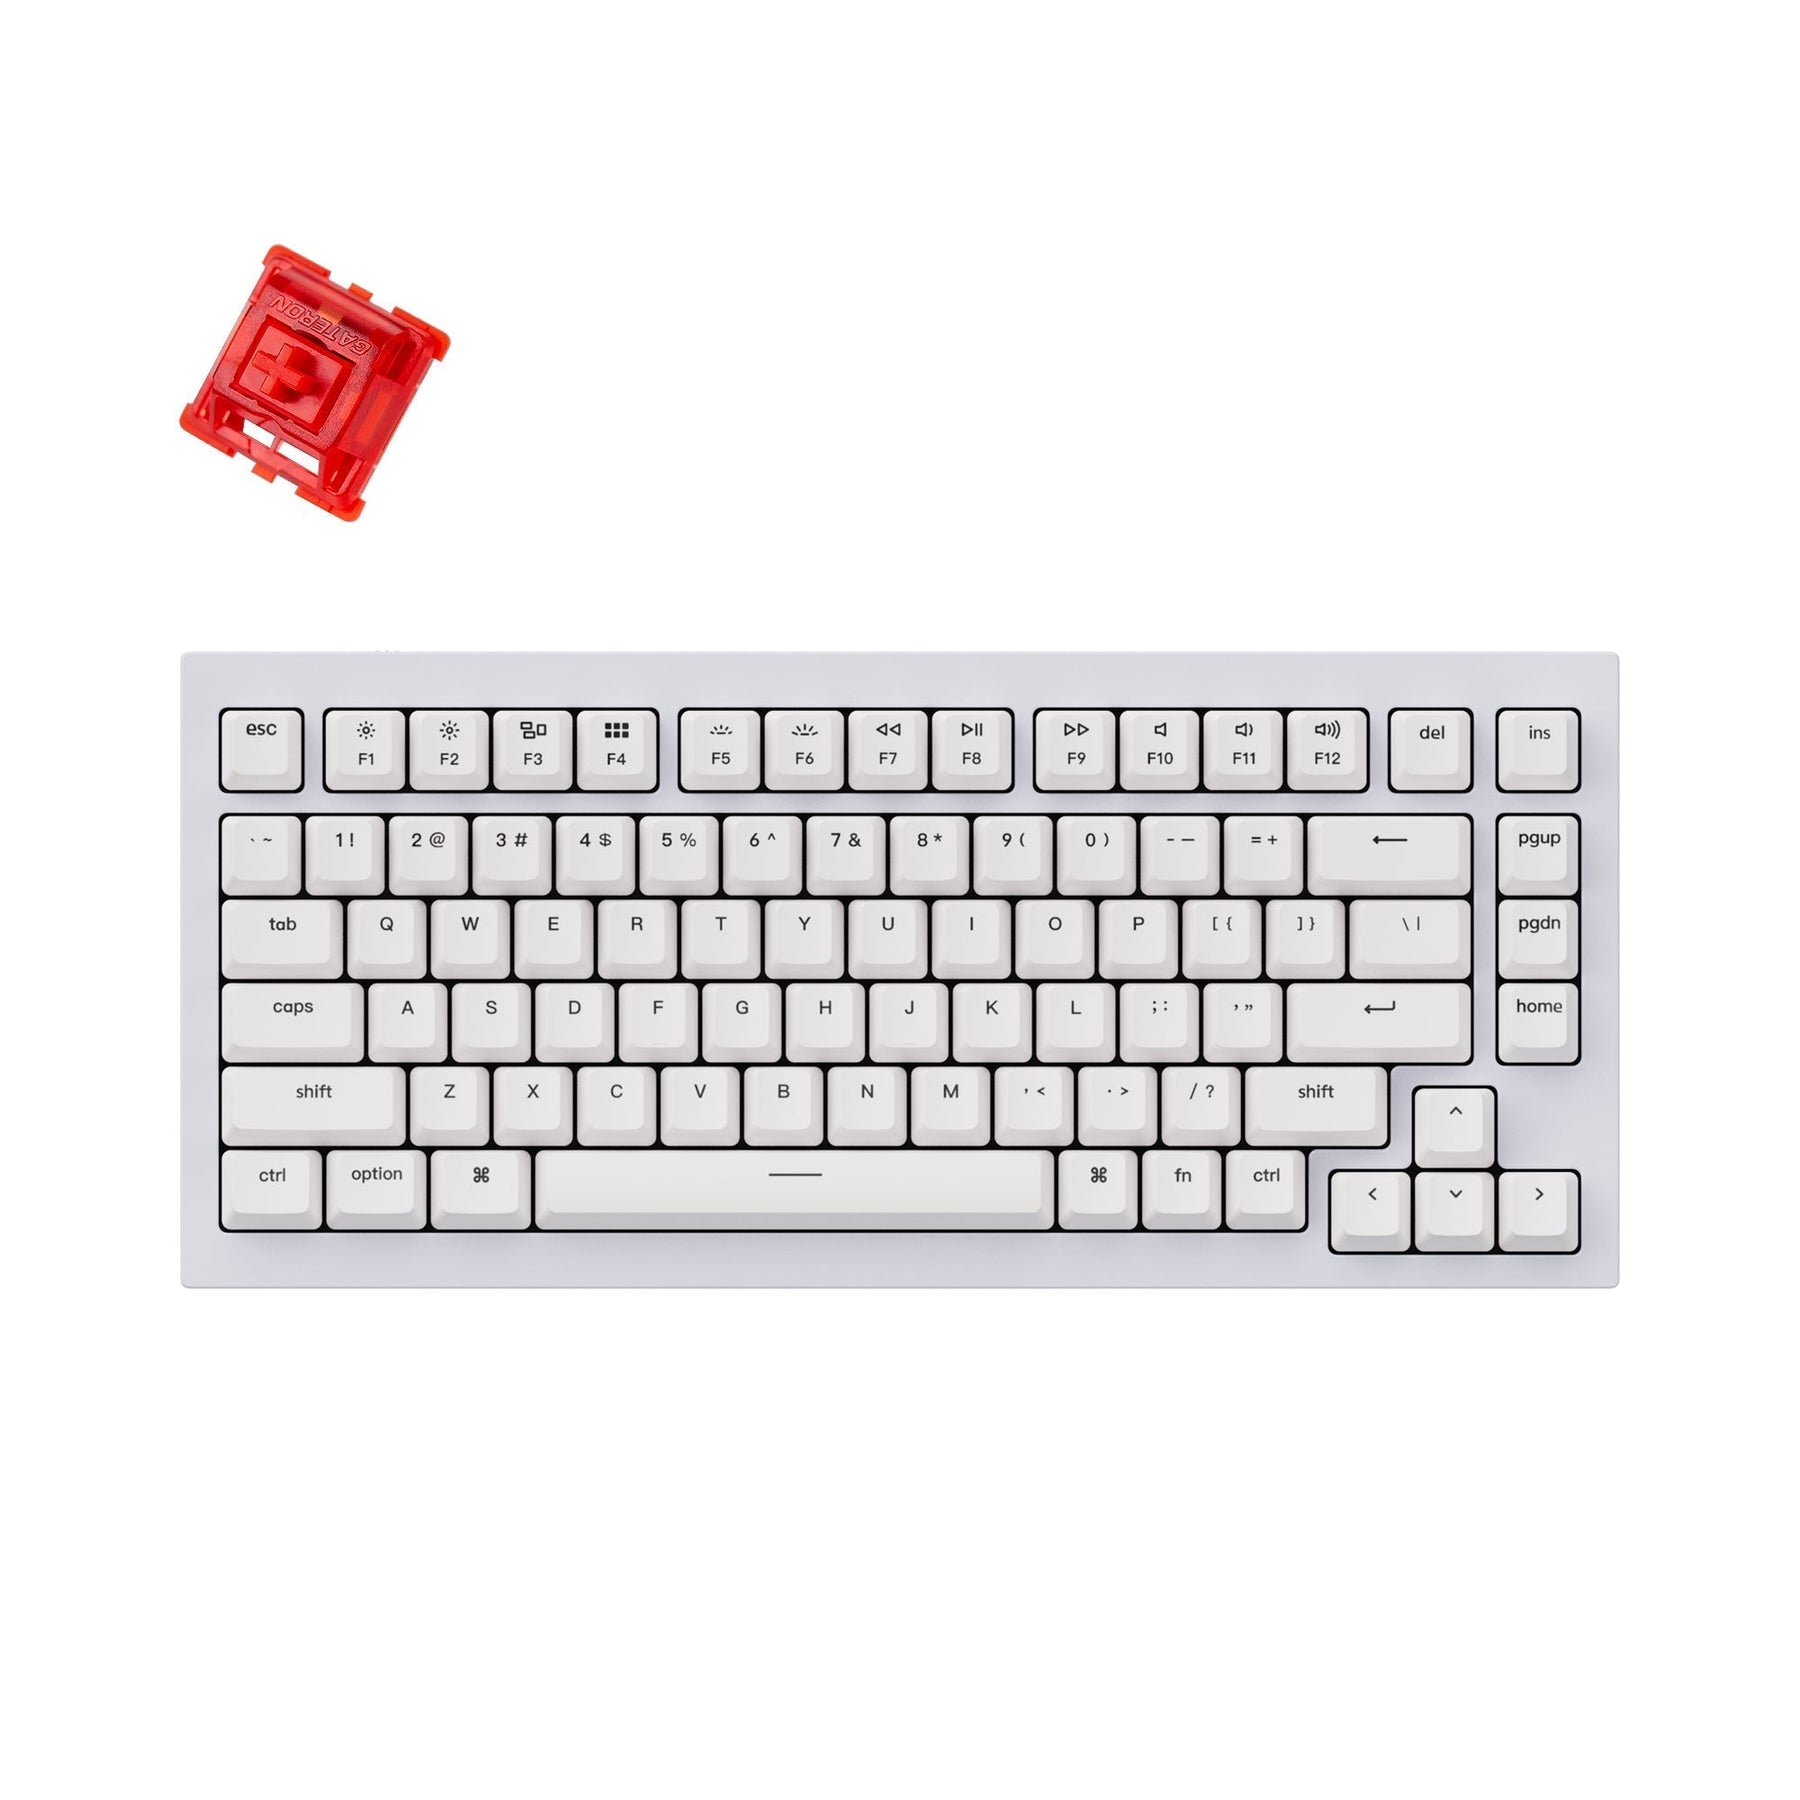 Keychron Q1 QMK Custom Mechanical Keyboard (US ANSI Keyboard)